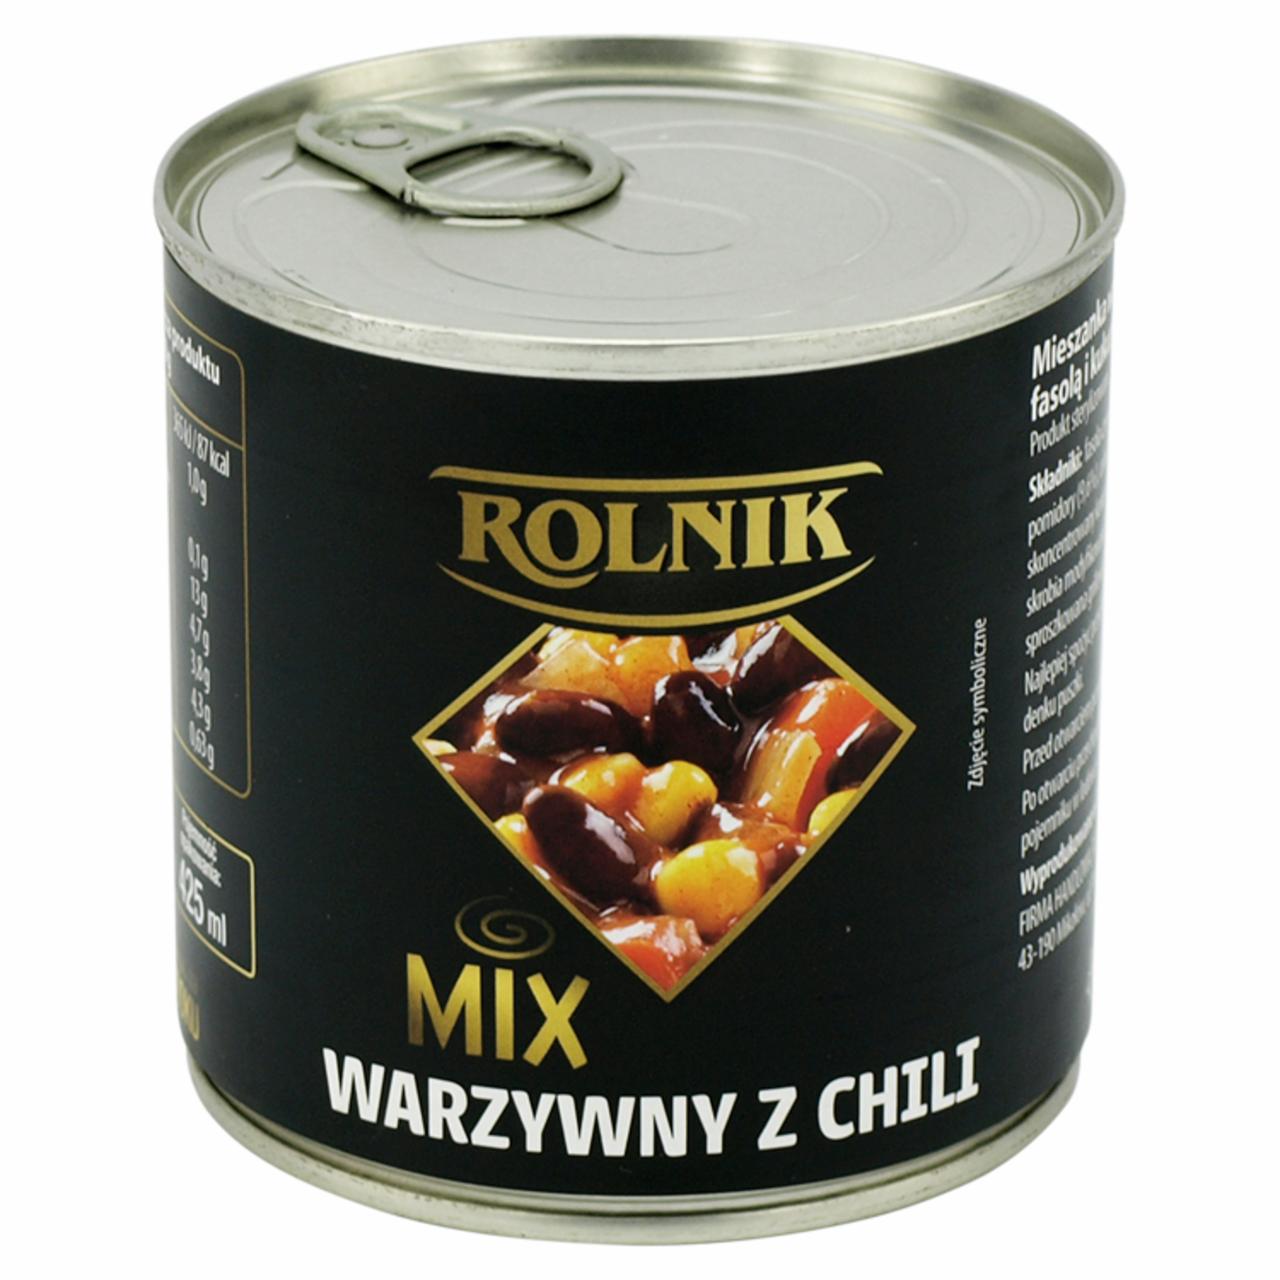 Zdjęcia - Rolnik Mix warzywny z chili